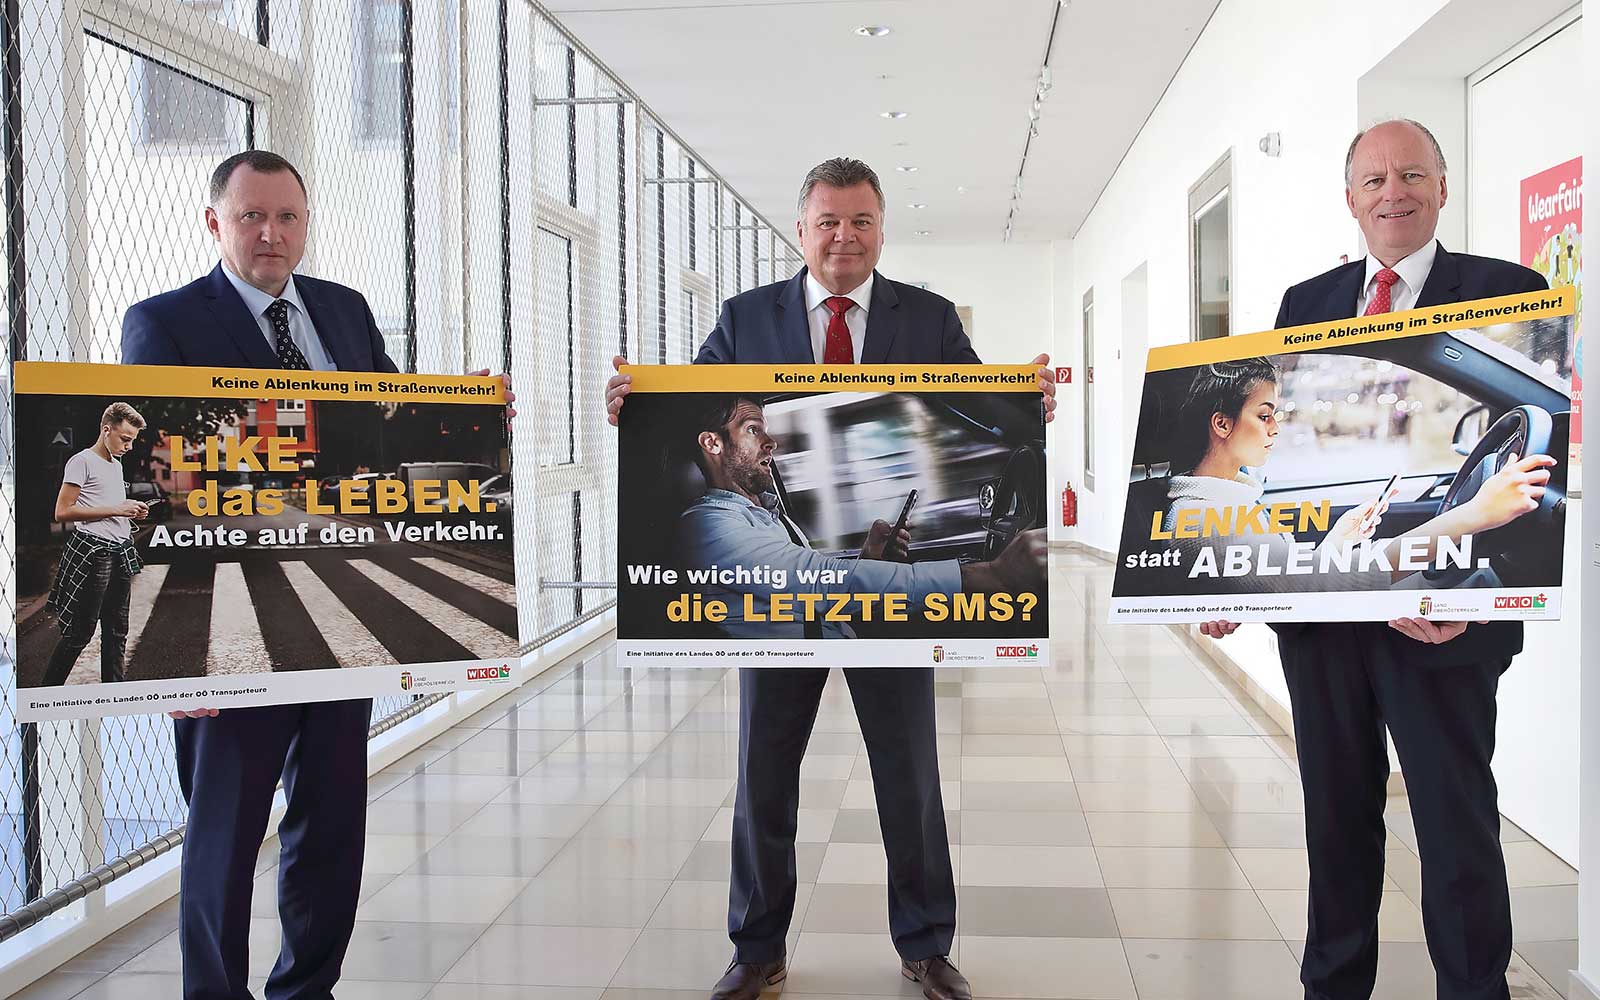 Das Land Oberösterreich präsentiert 3 Plakate zum Thema Ablenkung im Straßenverkehr